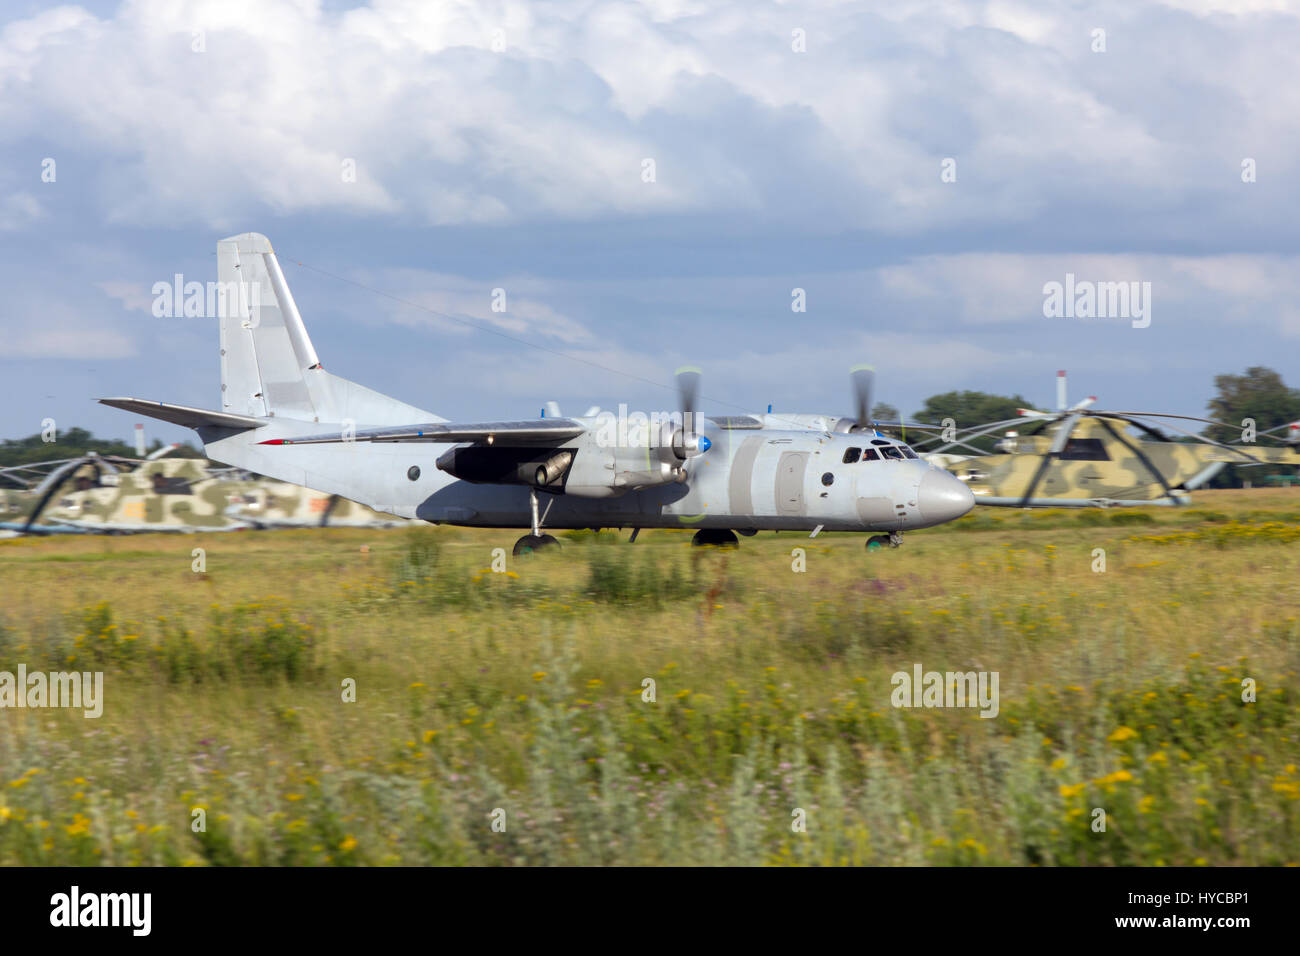 Un Antonov-26 aereo è atterrato, Rostov-on-Don, in Russia, 28 giugno 2011 Foto Stock